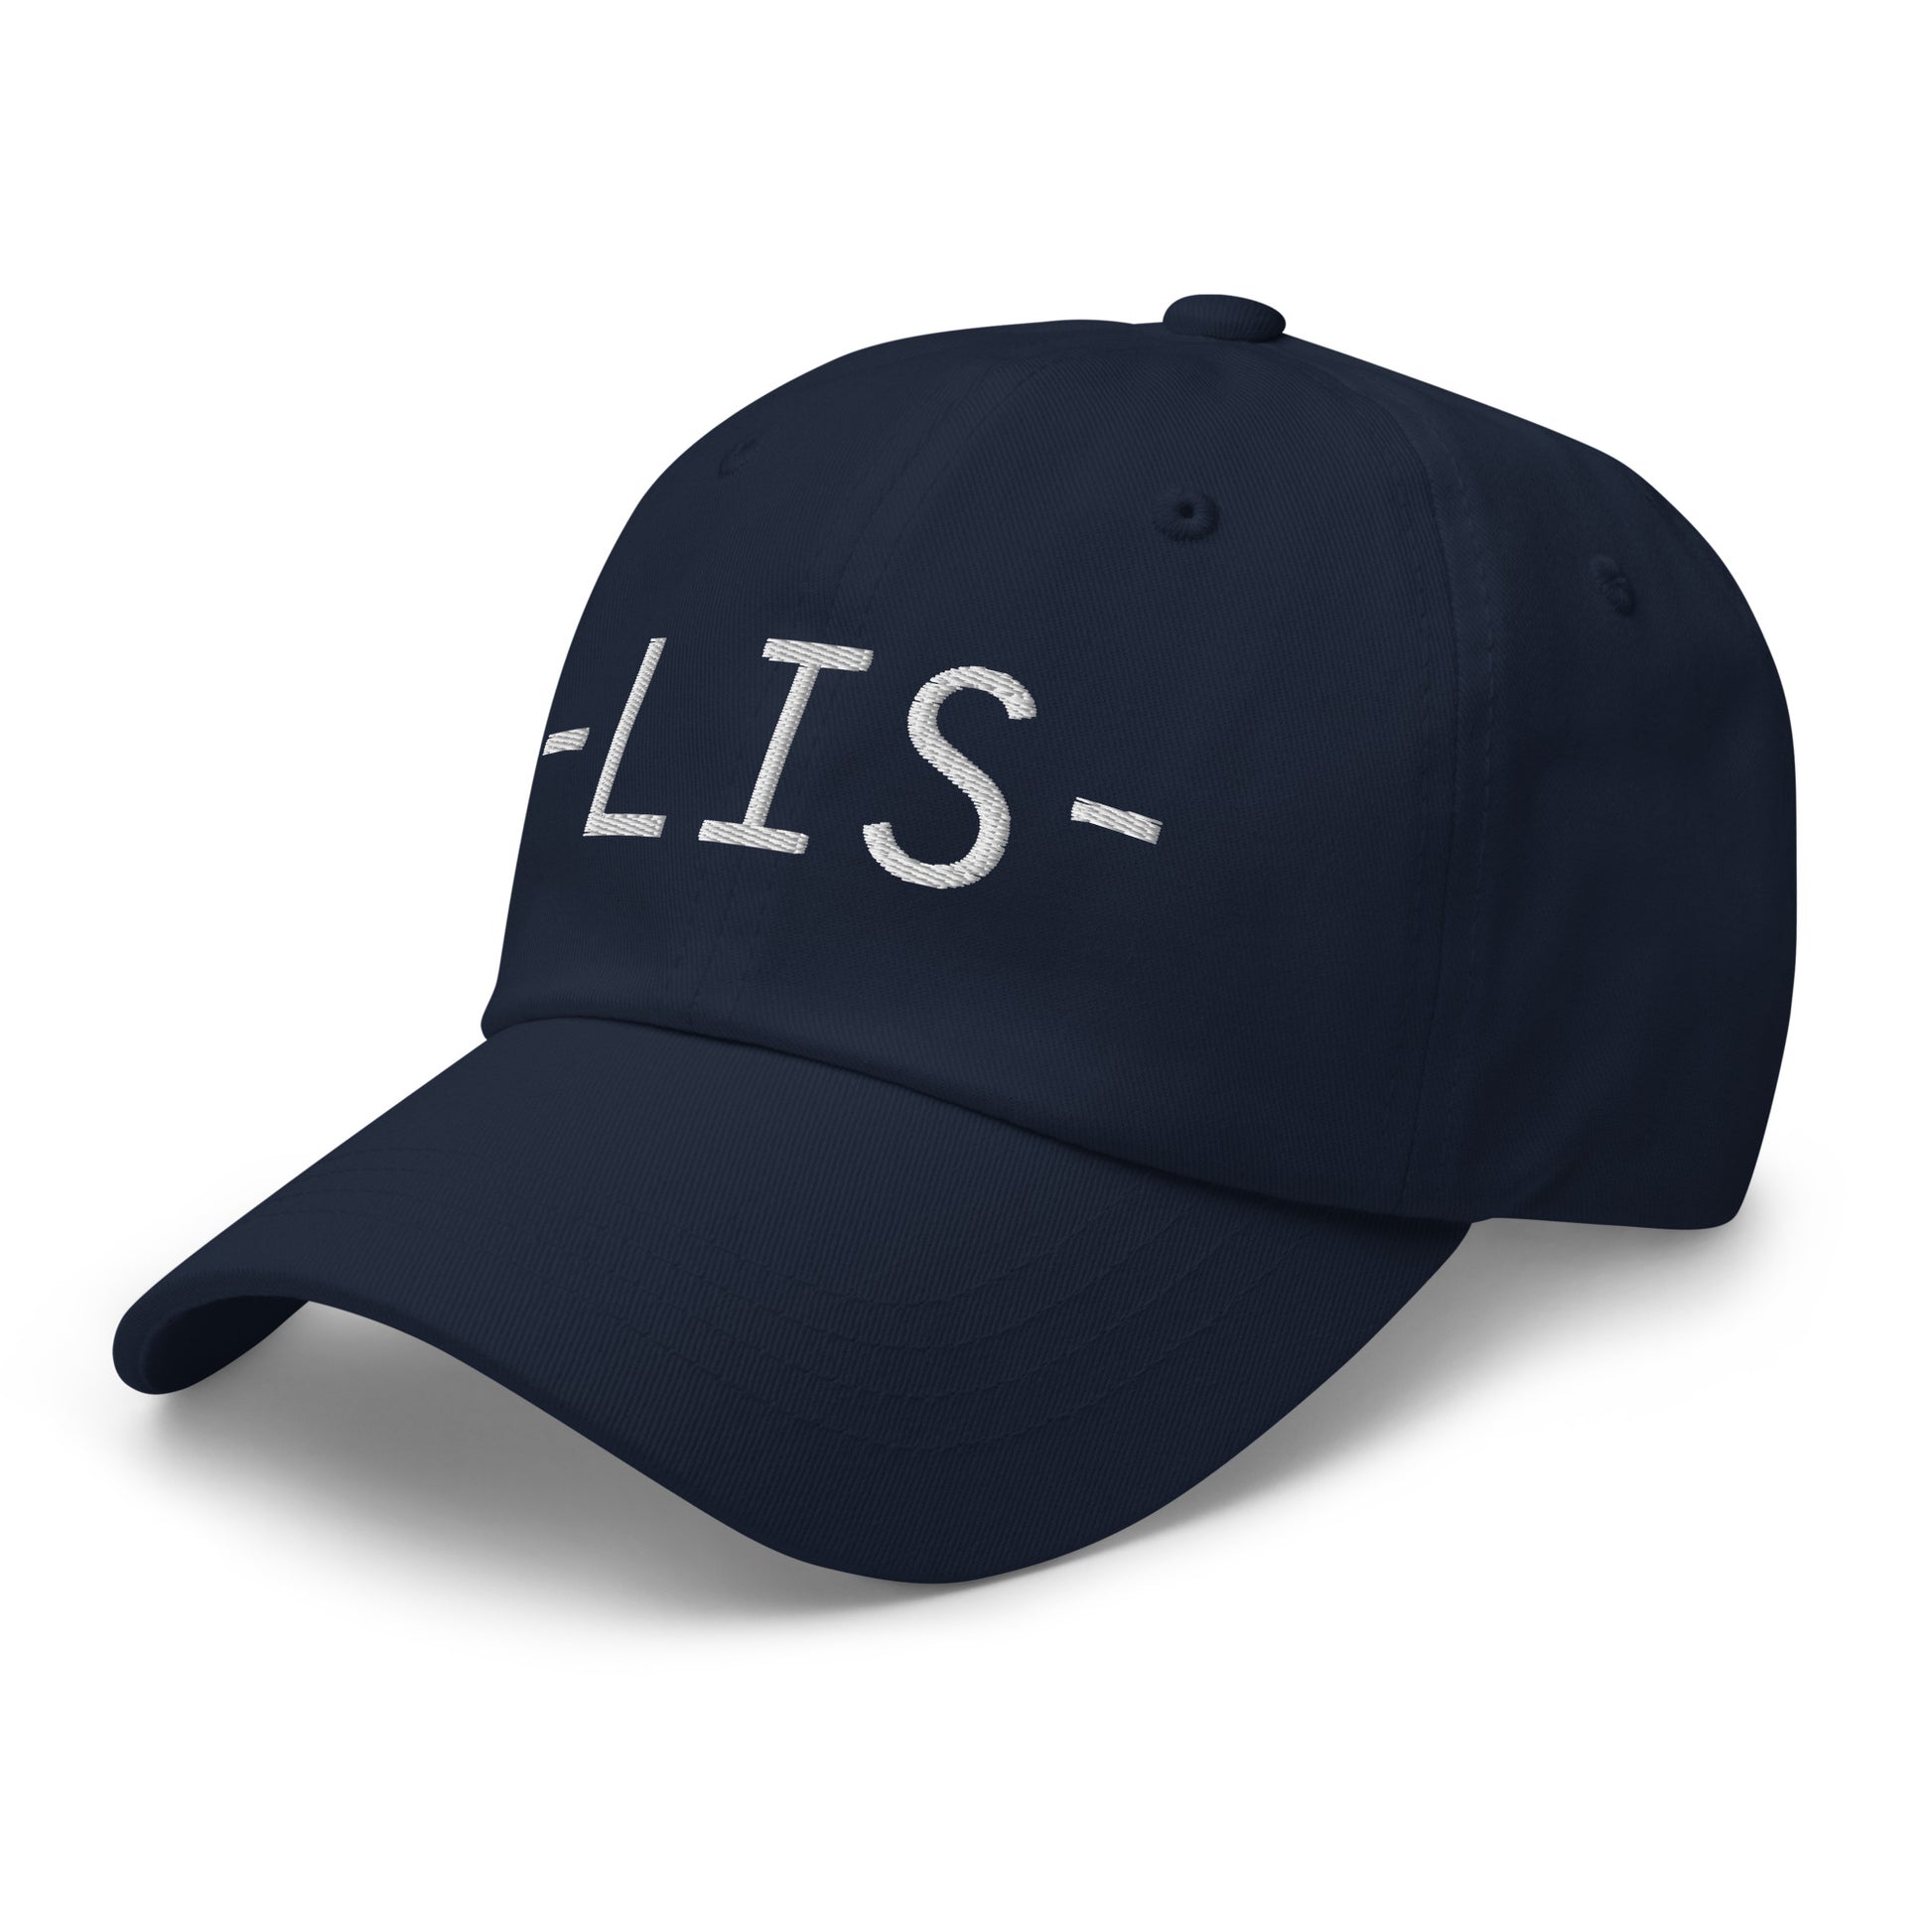 Souvenir Baseball Cap - White • LIS Lisbon • YHM Designs - Image 15